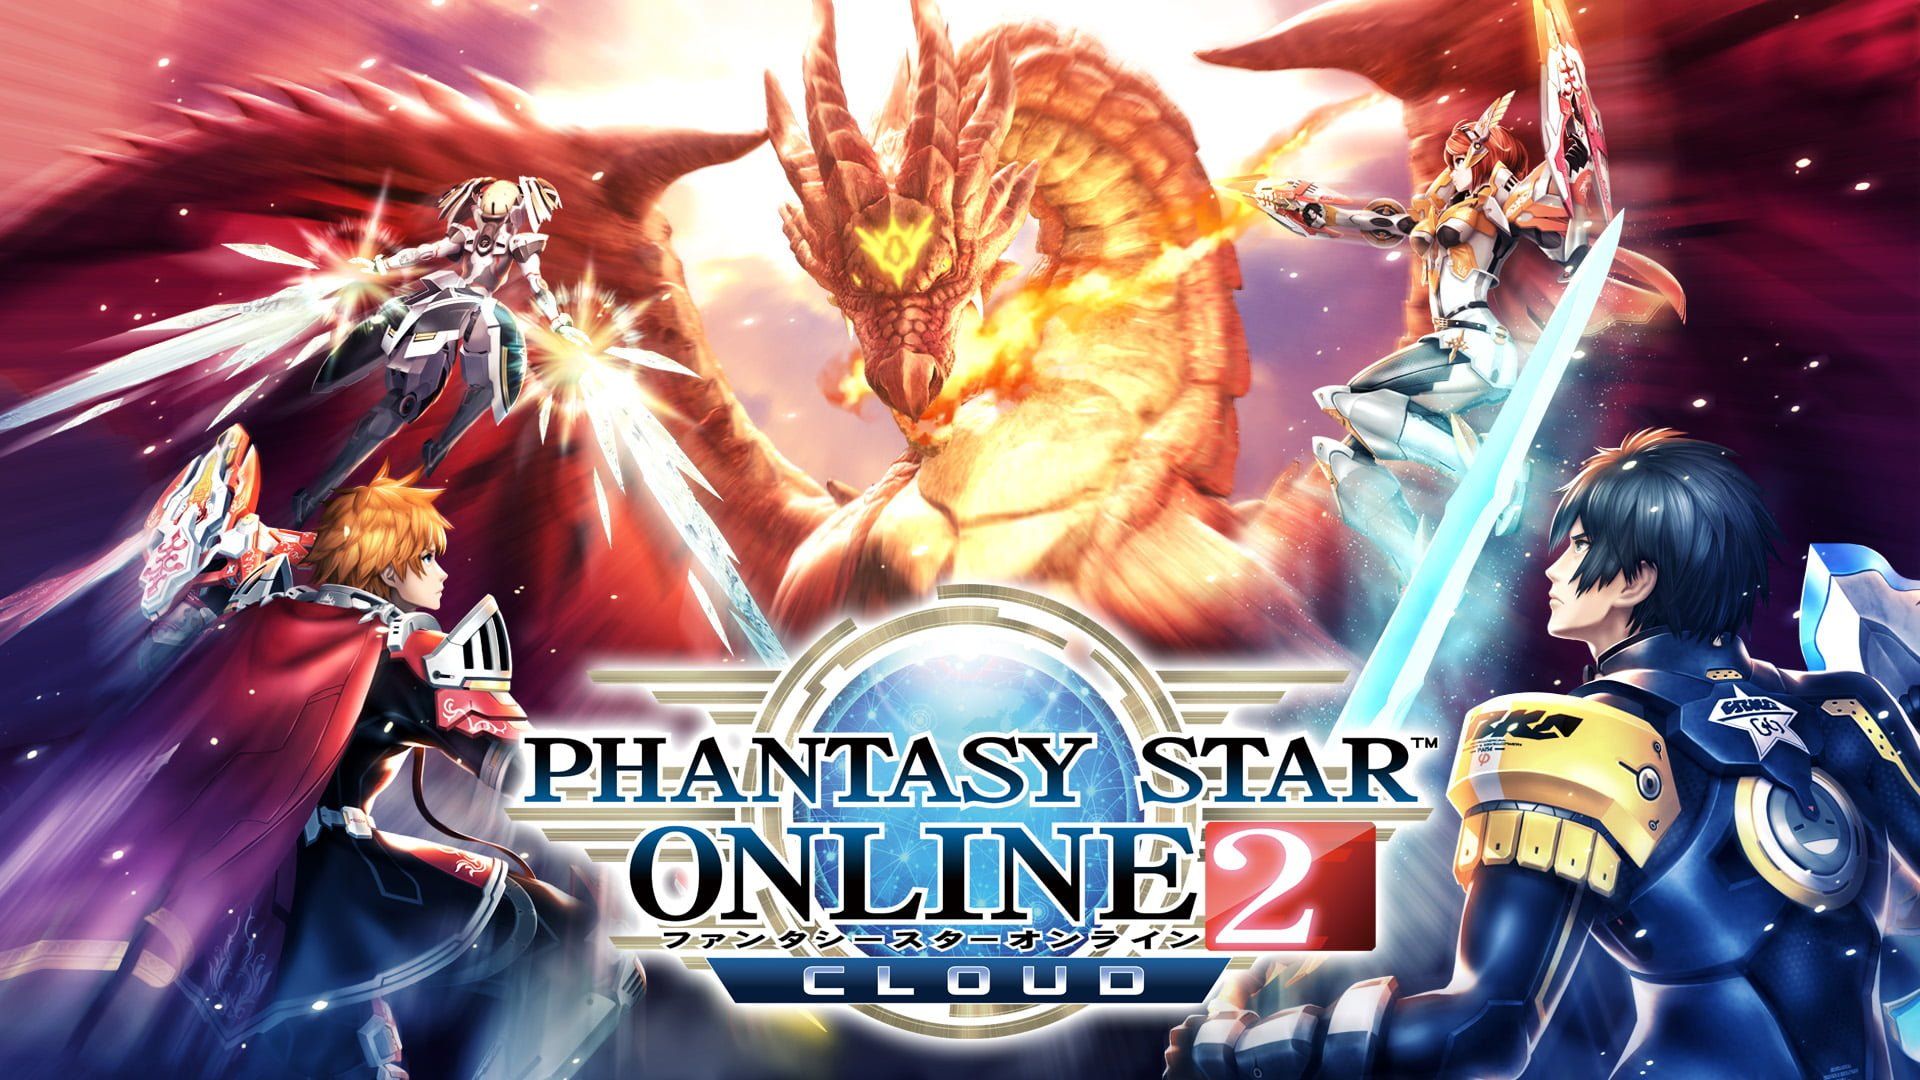 Phantasy Star Online 2 PC Version Full .gamerroof.com